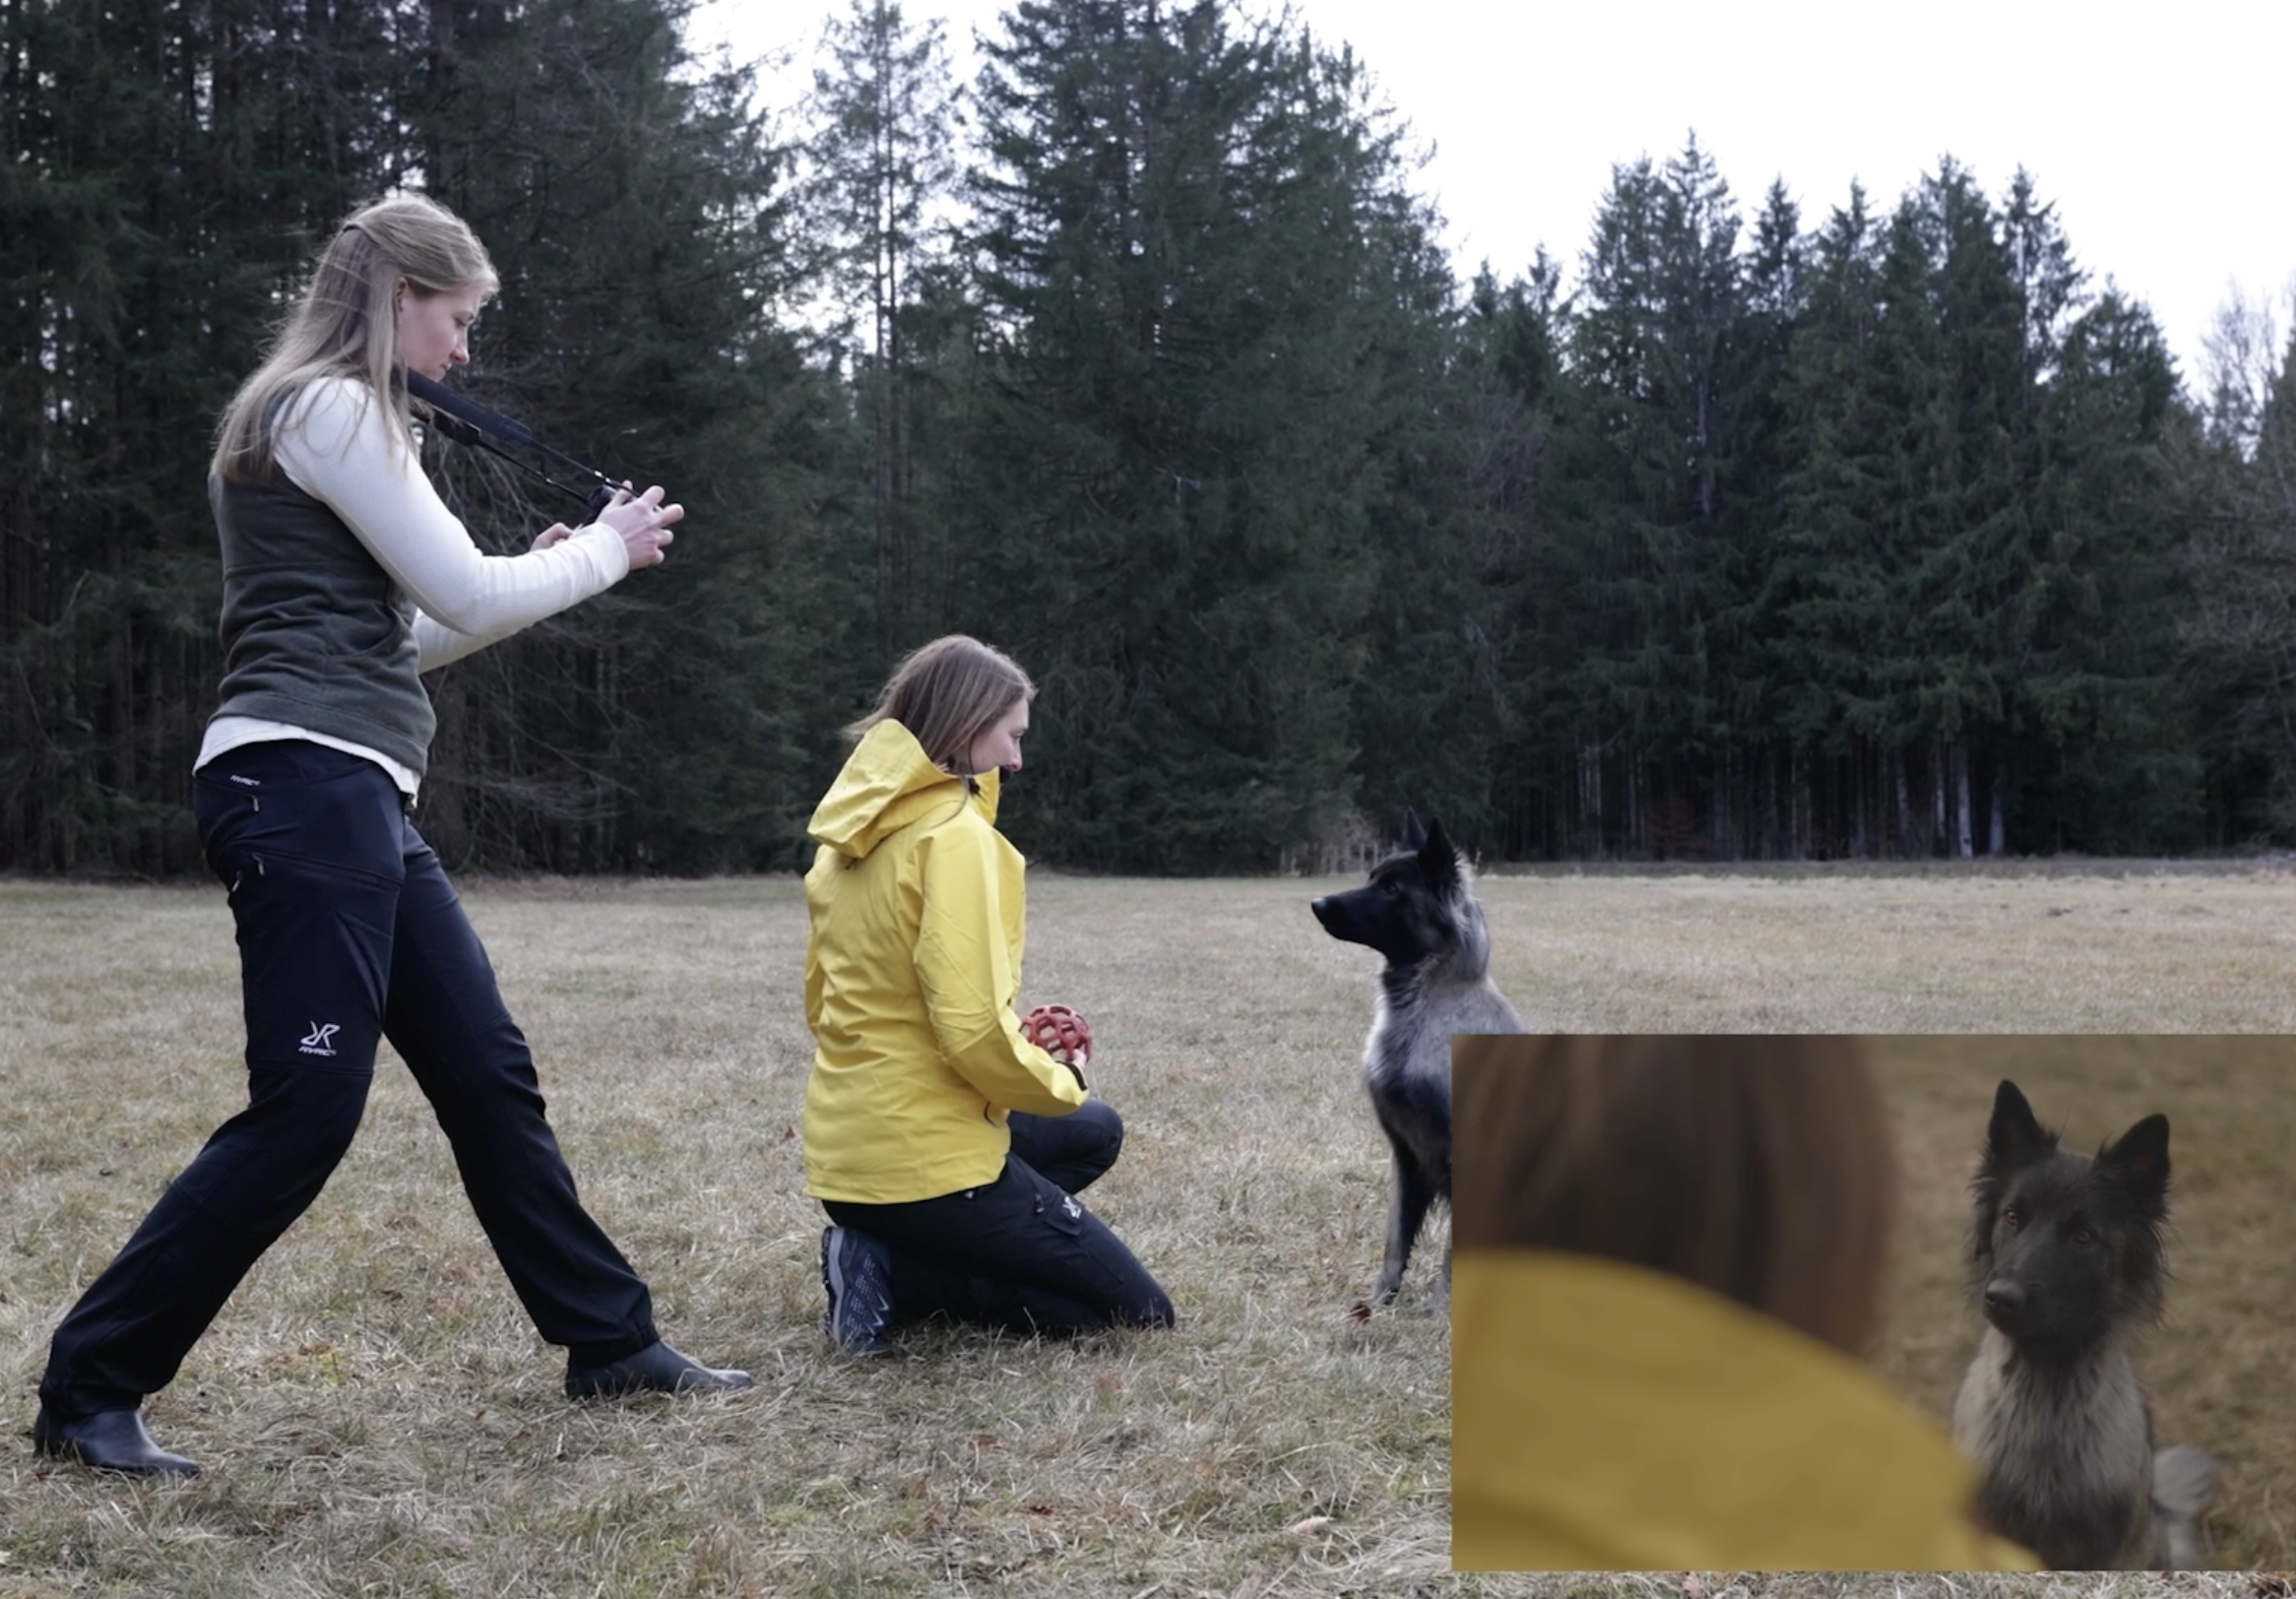 Videografie lernen Hundevideografie Hundevideos Cinematische Aufnahmen kreieren Wie mache ich stabile Videos Videostabilisierung Stabilisierung Videos Gimbal Emotionale Videografie Mensch-Hund-Bindung Mensch-Hund-Team